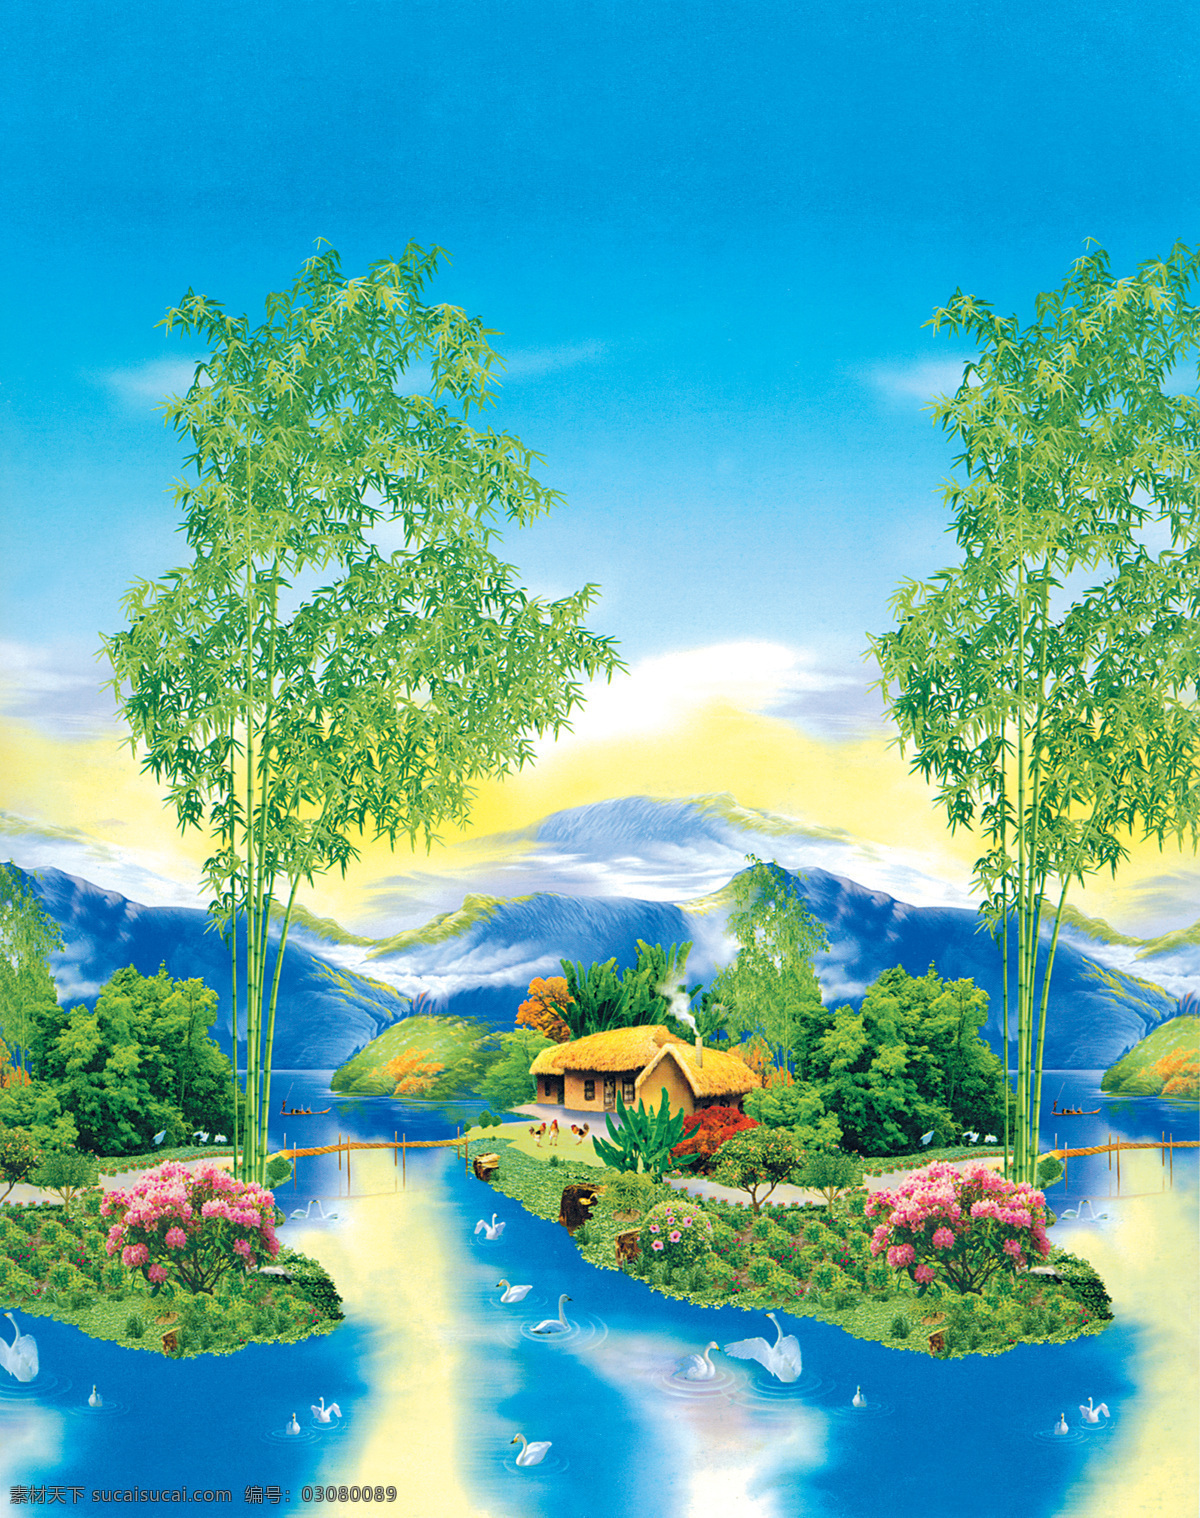 自然 风景画 300 风景 绘画书法 山水 设计图库 文化艺术 自然风景画 设计素材 模板下载 窗帘画 装饰素材 山水风景画